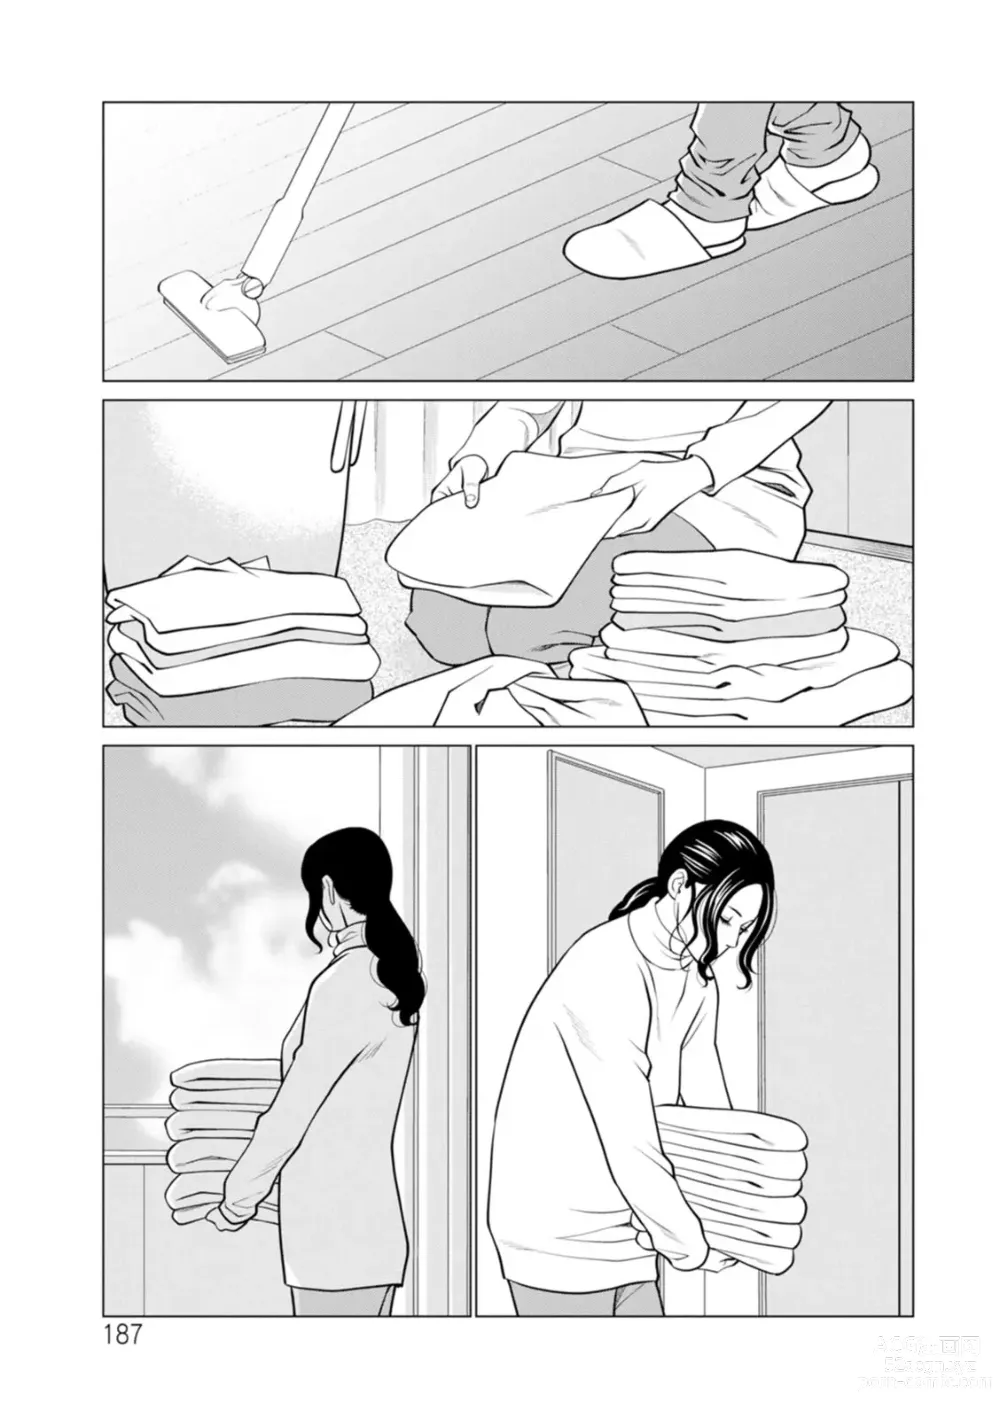 Page 187 of manga Rengoku no Sono - The Garden of Purgatory 2